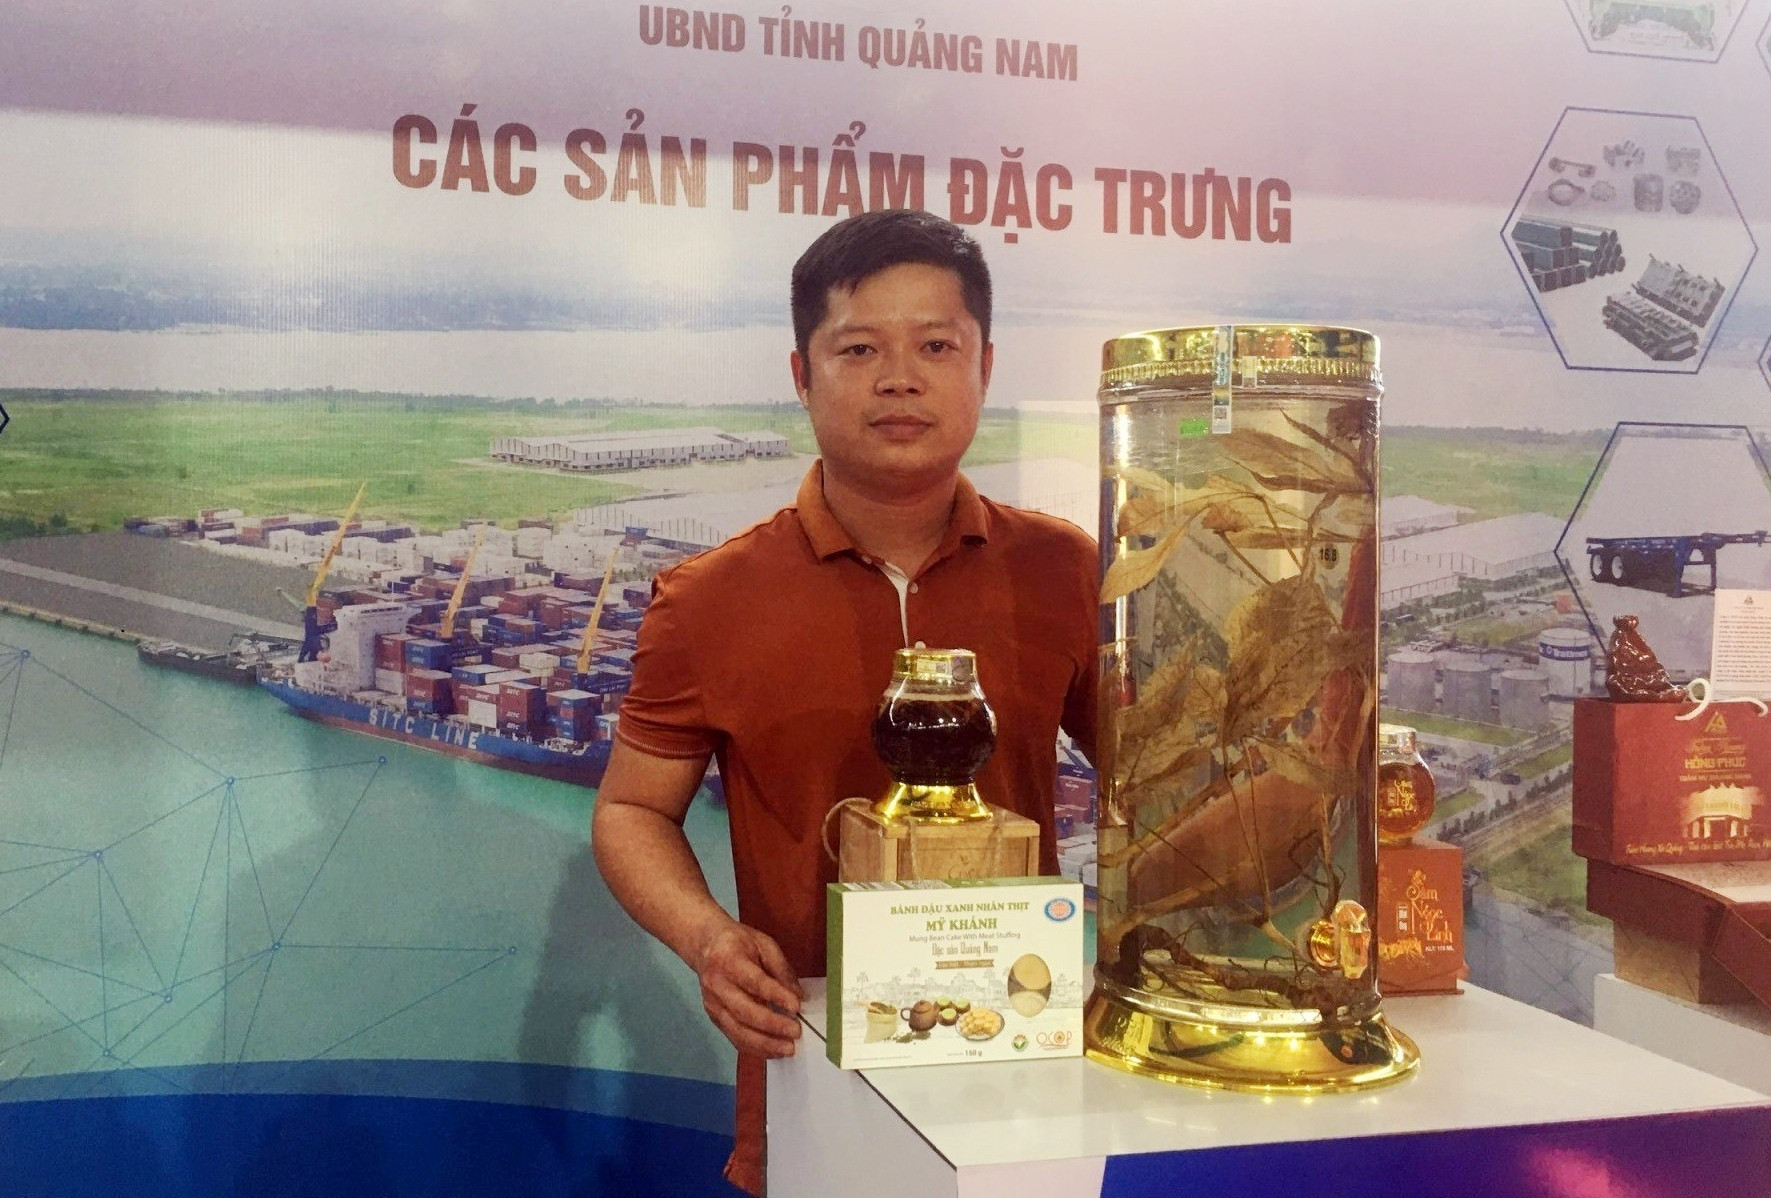 Sâm Ngọc Linh, một sản phẩm đặc trưng nổi bật của Quảng Nam tại hội chợ. Ảnh: NS